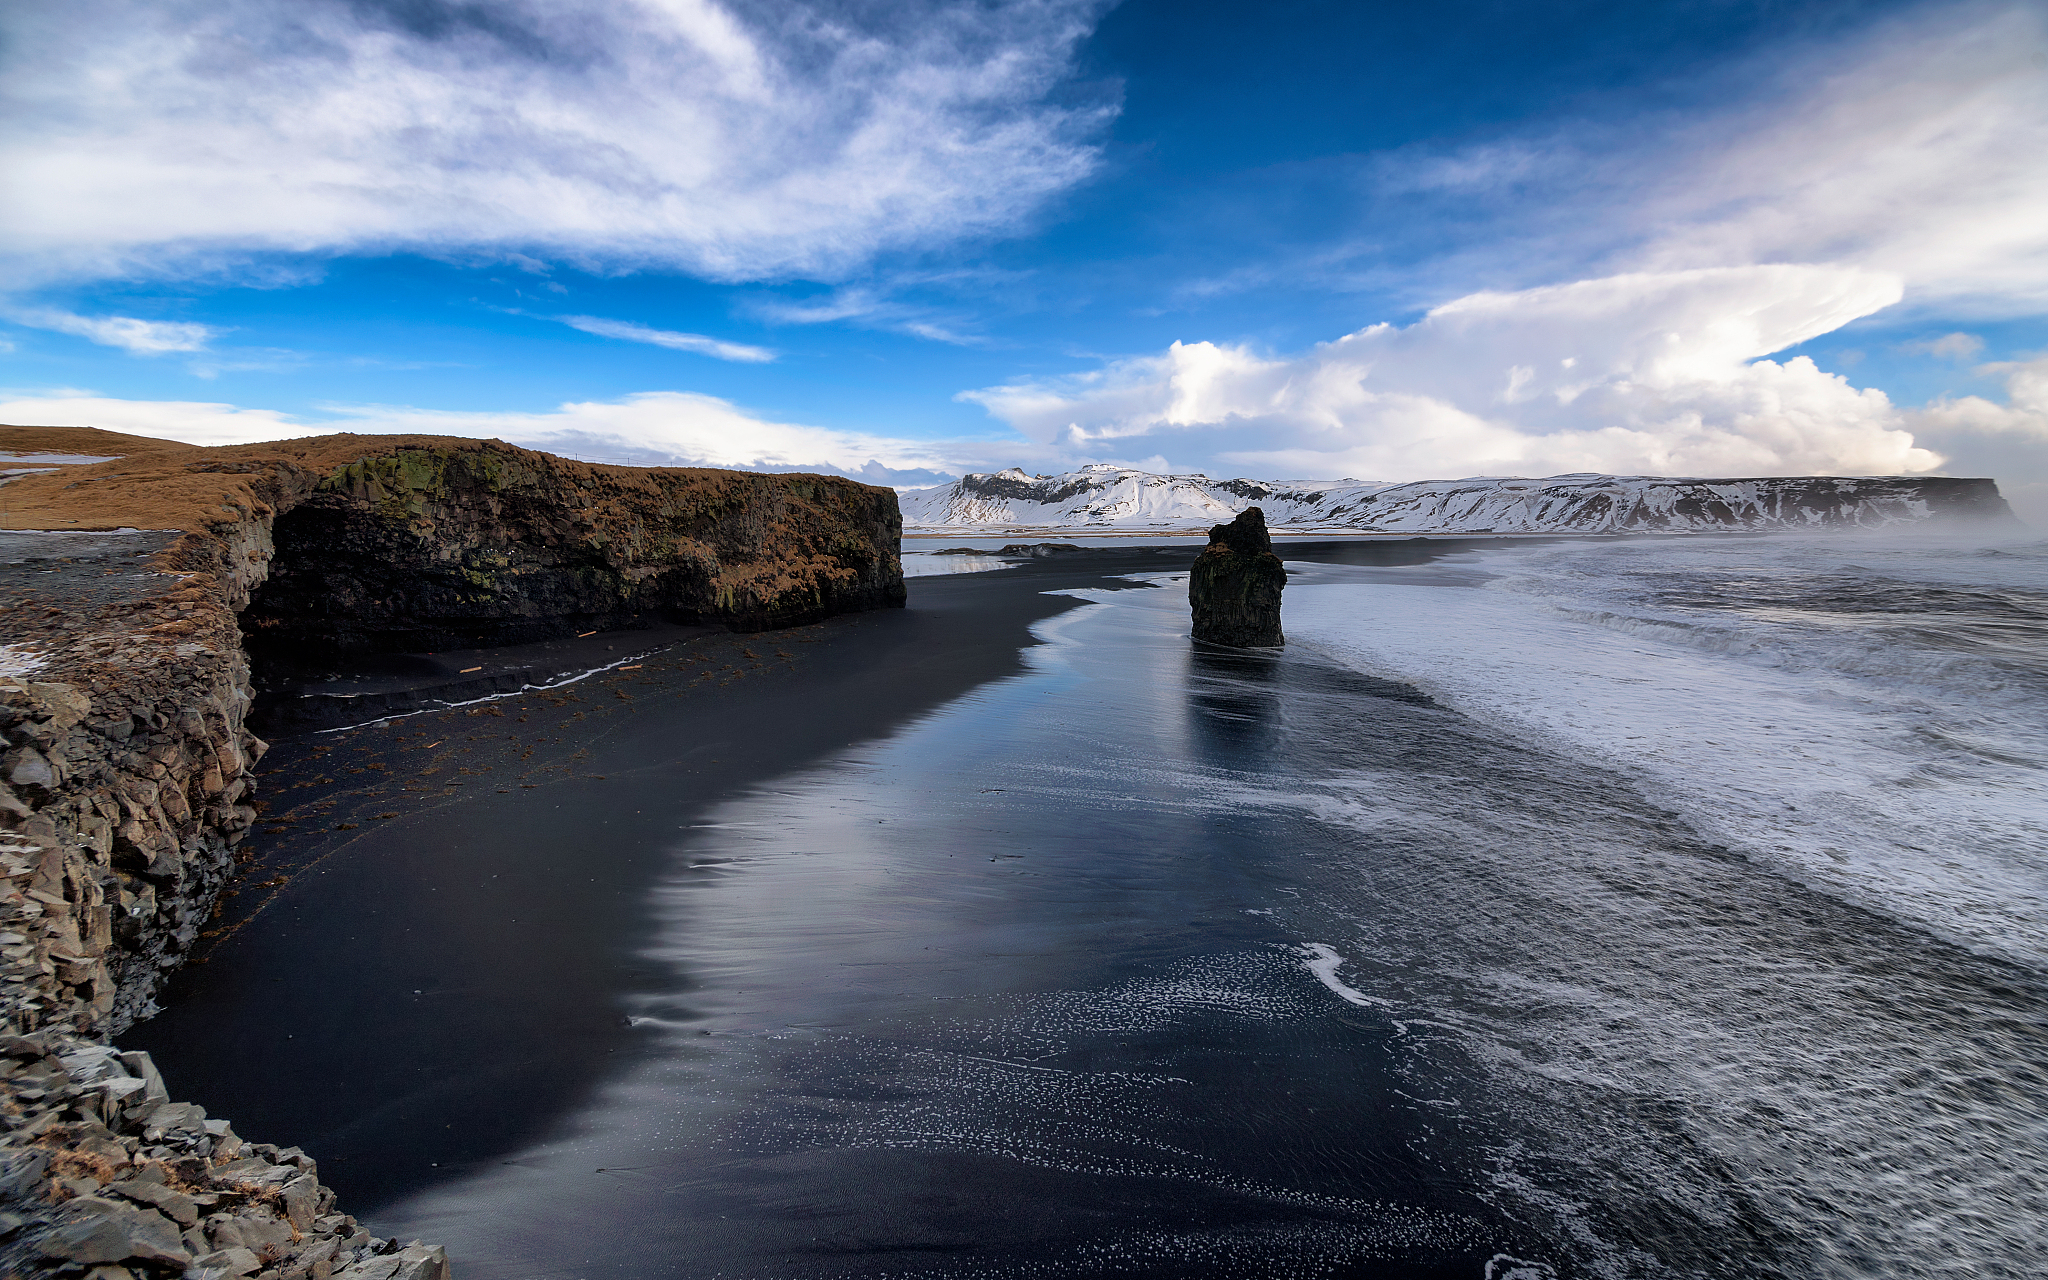 经过海风与海浪的雕琢,黑色的玄武岩变成了黑沙,冰岛的几处黑沙滩中